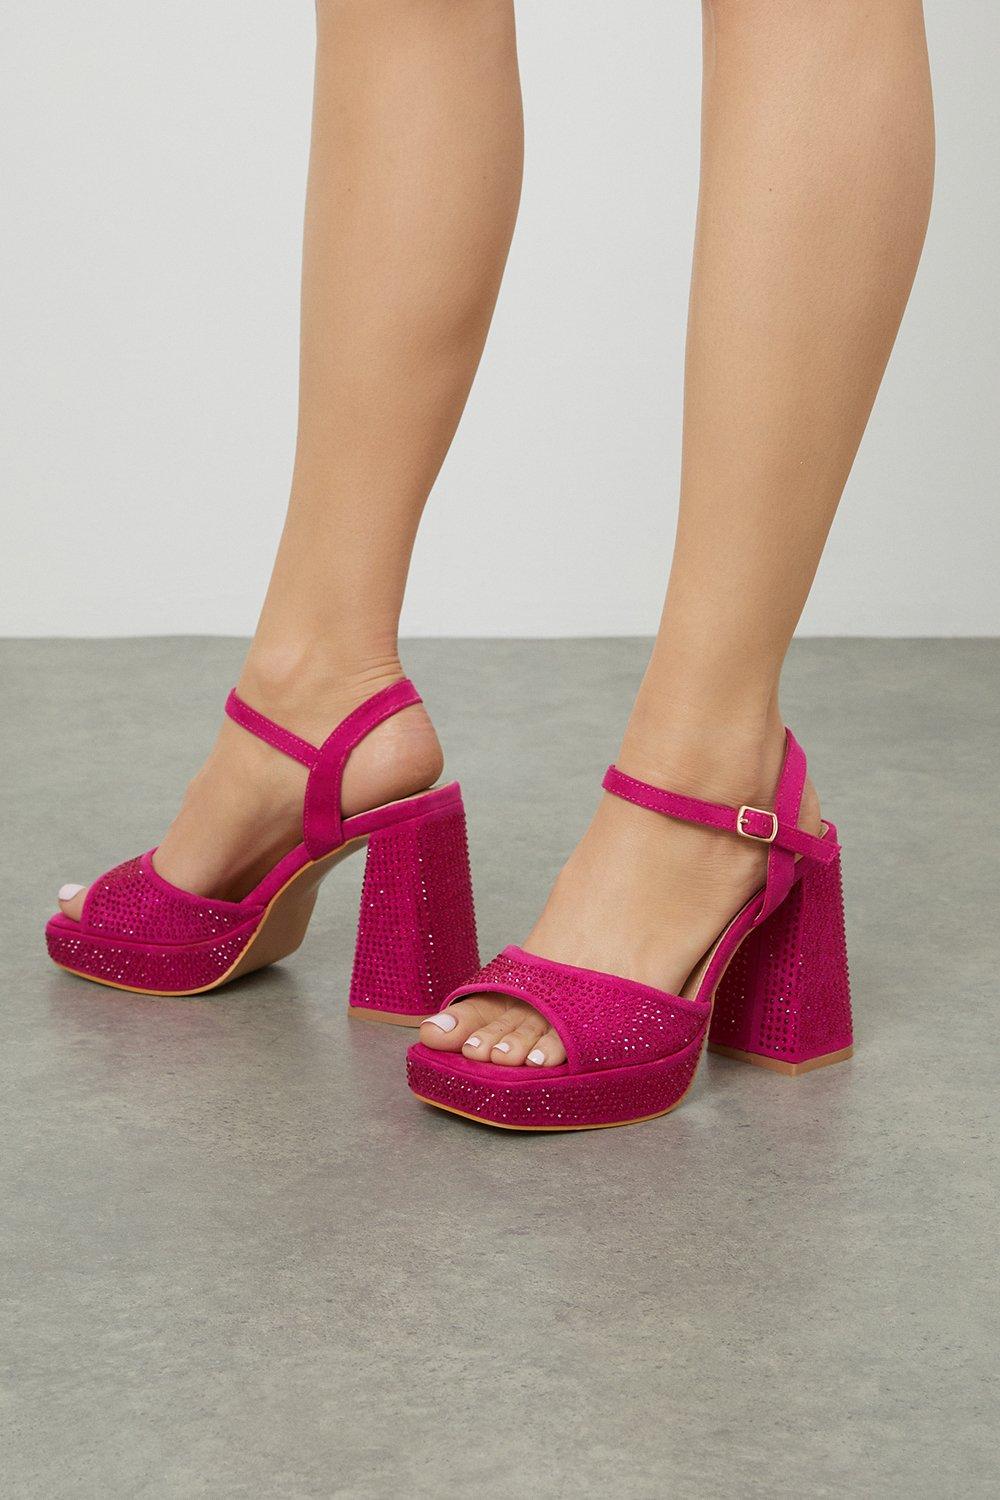 Women’s Bella Sparkly Platform Heel Sandals - pink - 5